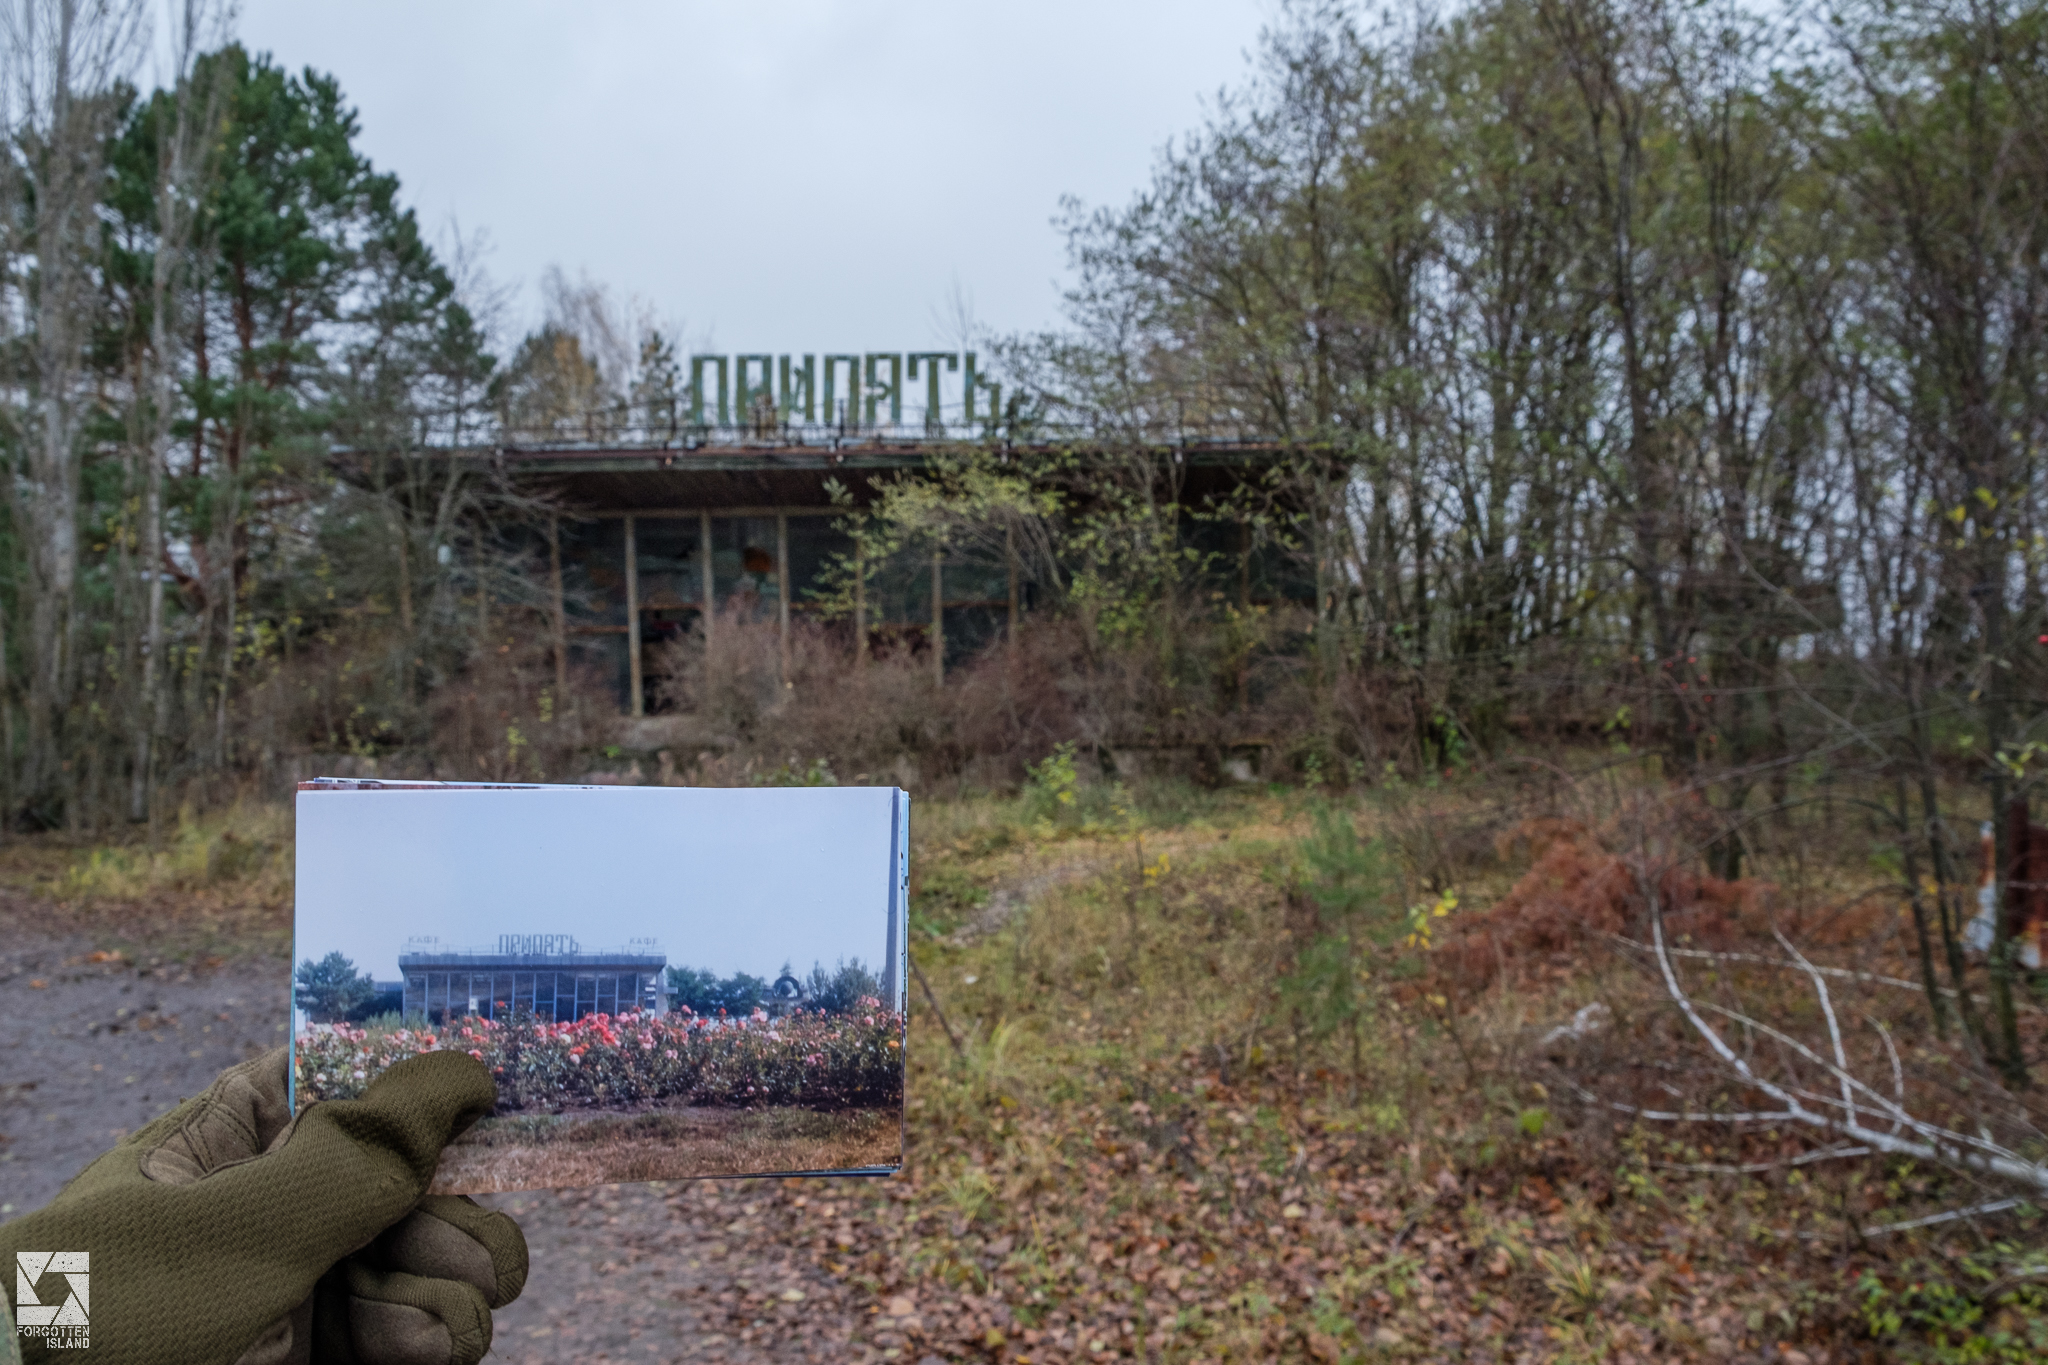 Chernobyl Then and Now Part 6  - Café "Pripyat"